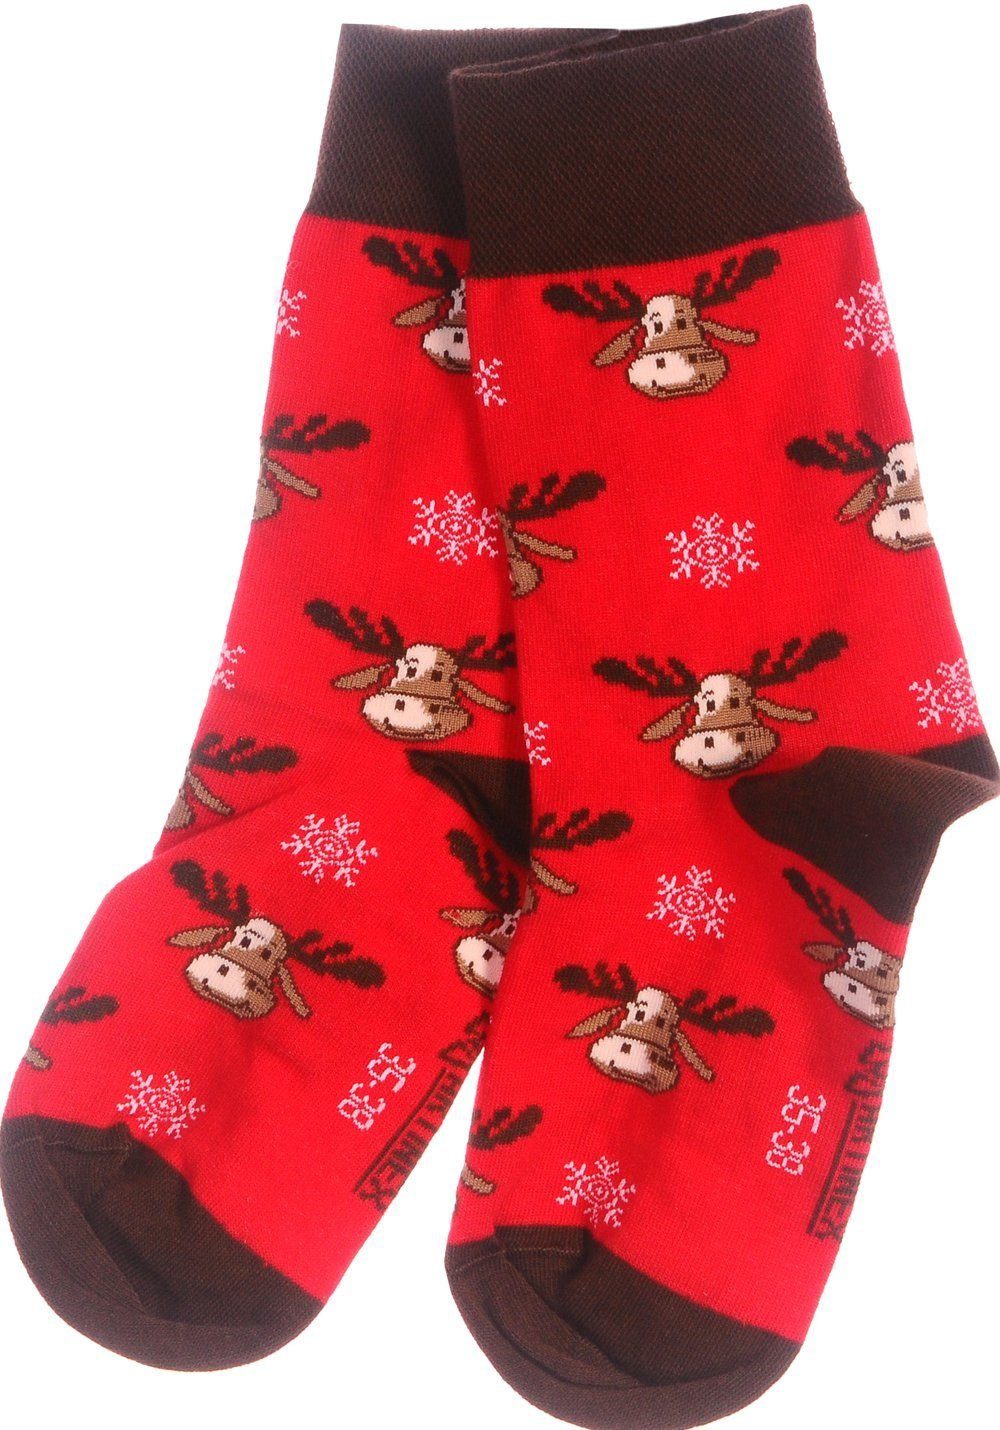 Socken Weihnachtssocken, ganze 46 festlich, Martinex Familie 39 Freizeitsocken für weihnachtlich, Paar Socken 42 Socken 1 38 die 43 Rot 35 Strümpfe